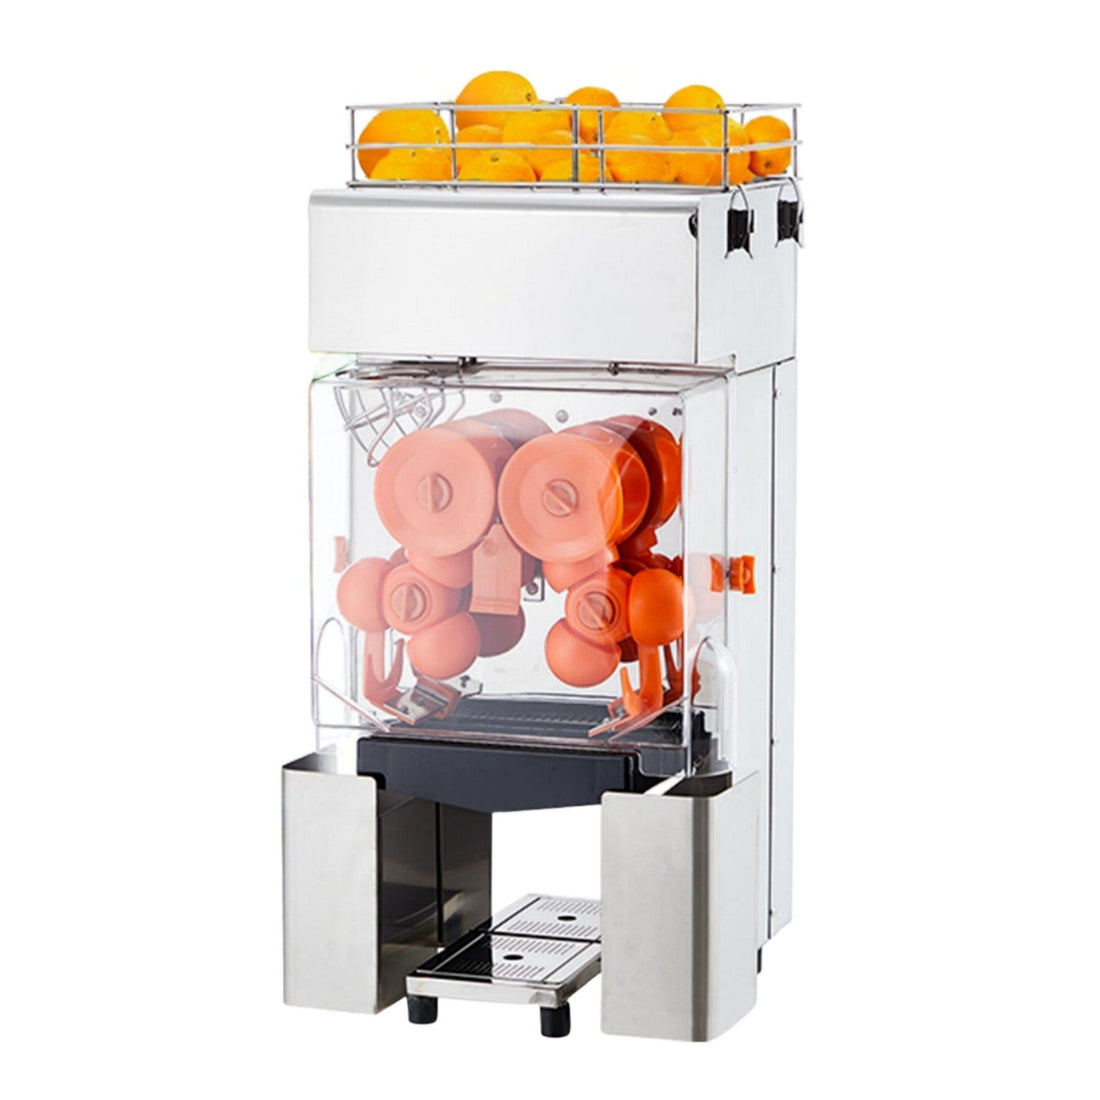 20W Auto Feeding Commercial Juicer, 110V Orange Squeezer - GARVEE